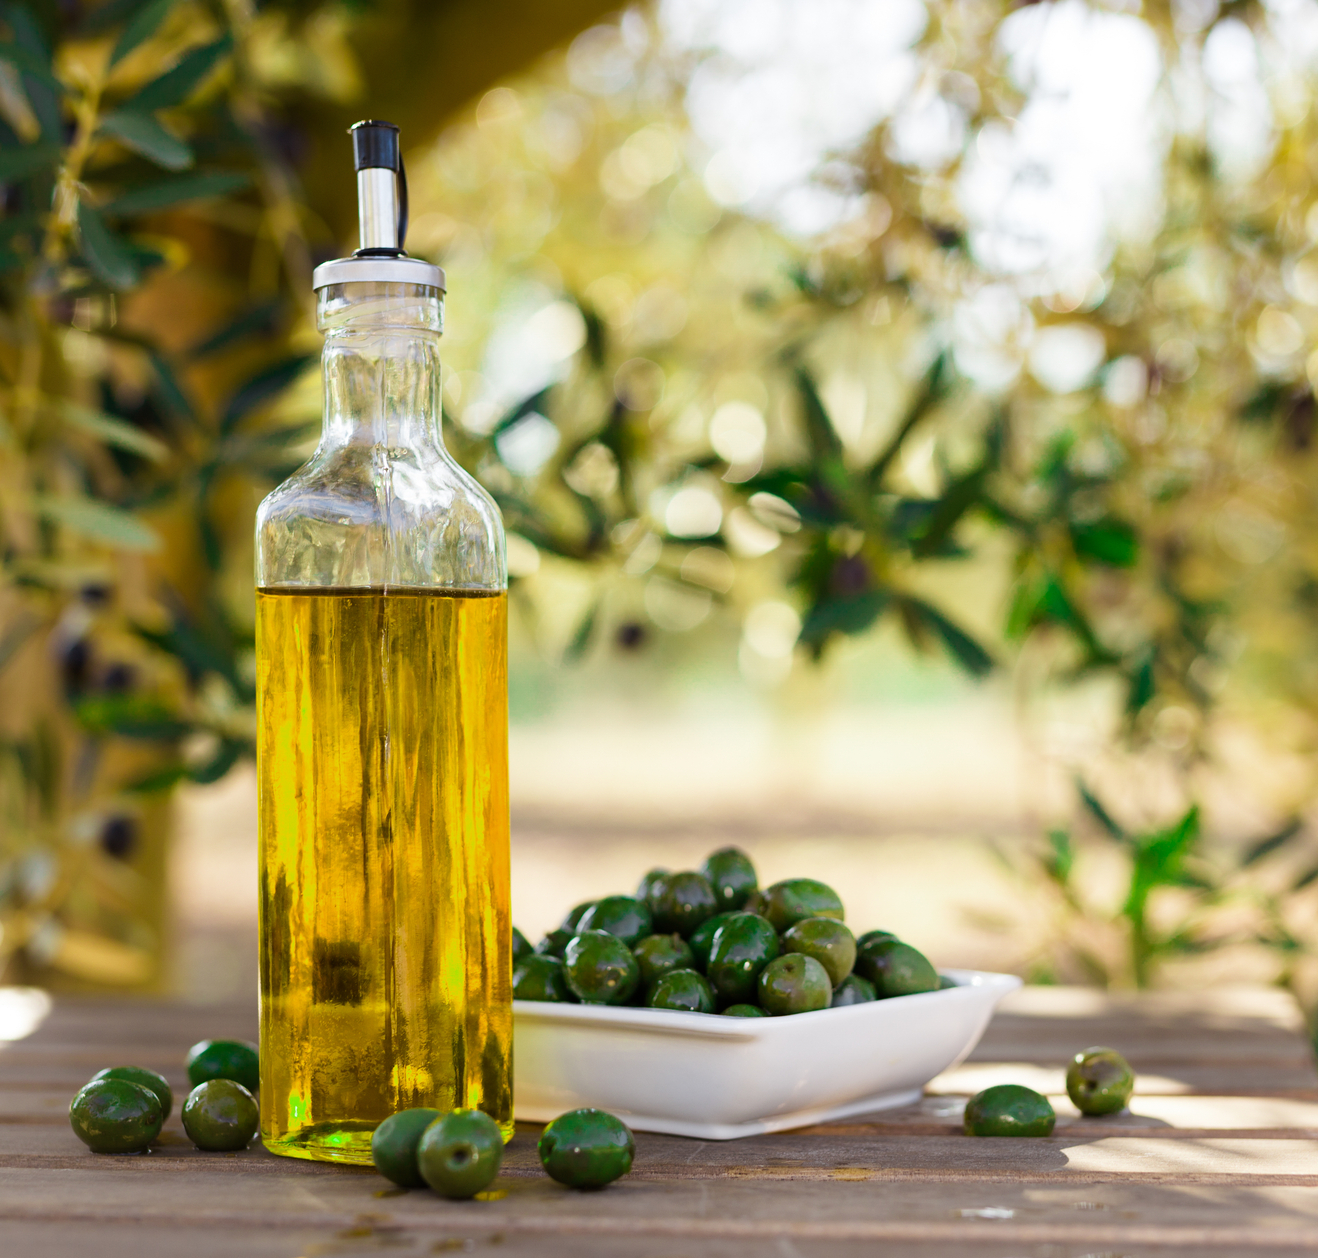 Olivov olej, krl zdravch tuk - 1. dl